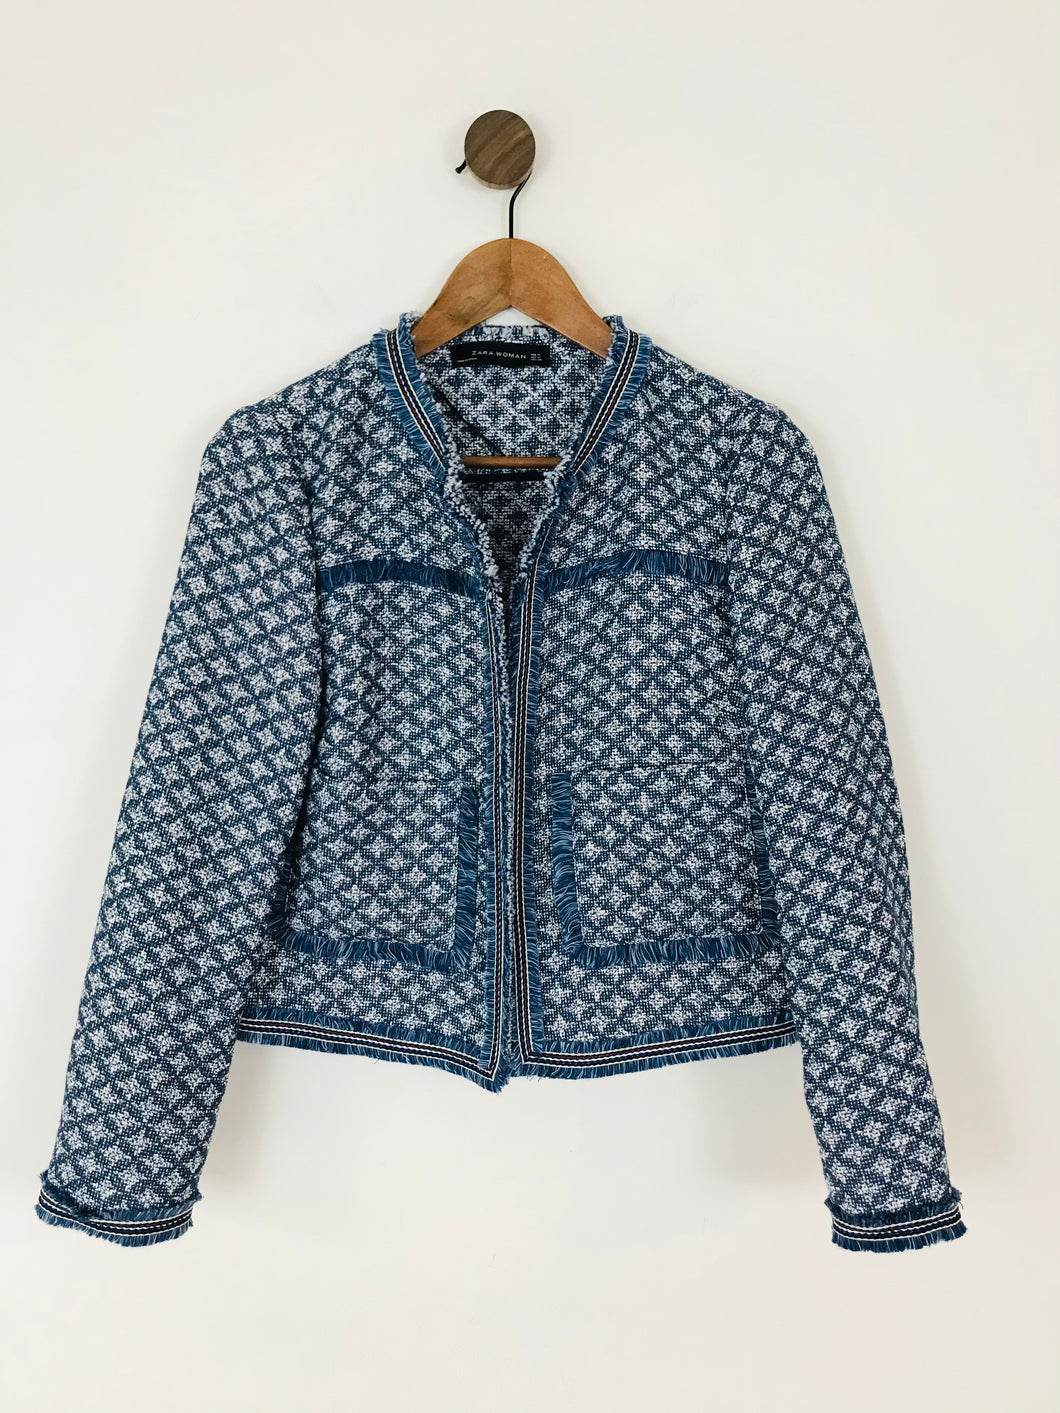 Zara Women’s Tweed Tassel Blazer Jacket | M UK10-12 | Blue